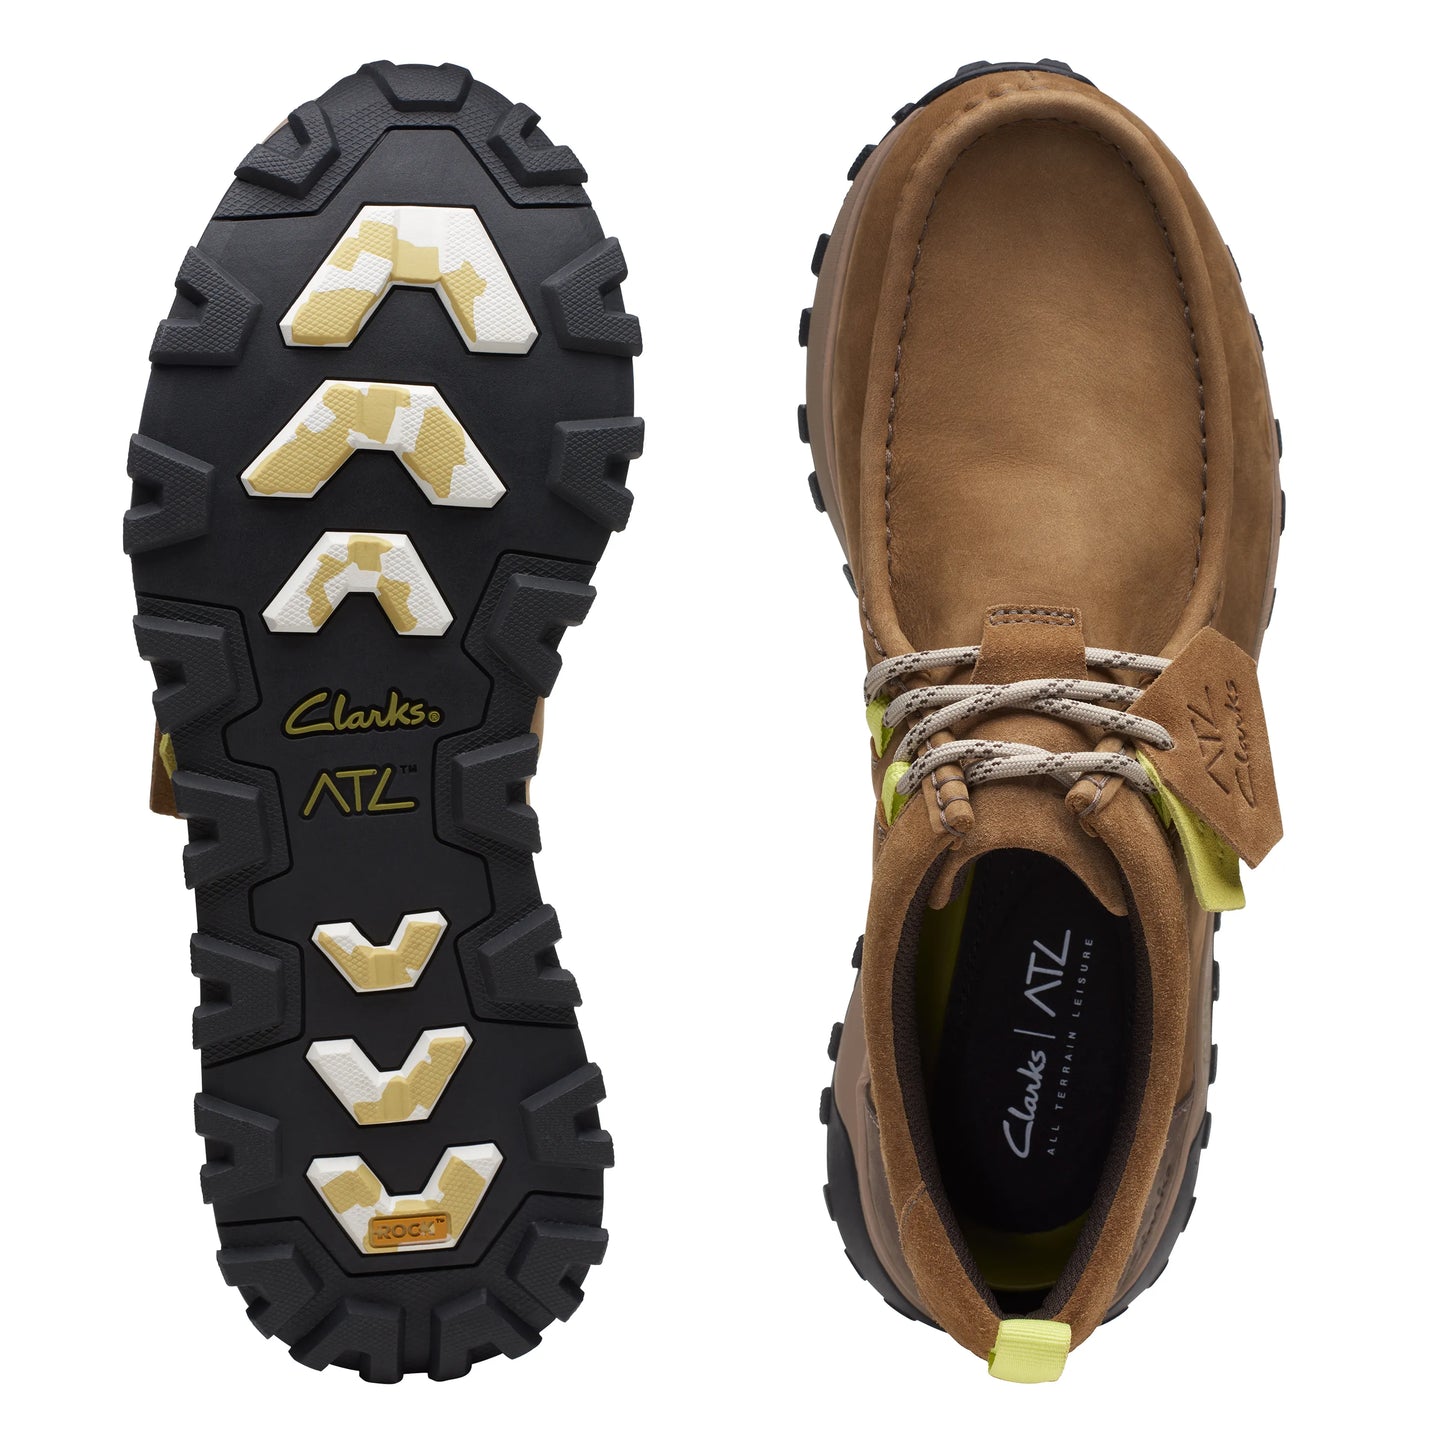 Zapatos Derby De La Marca Clarks Para Hombre Modelo Atl Trek Wally Dark Sand En Color Marrón